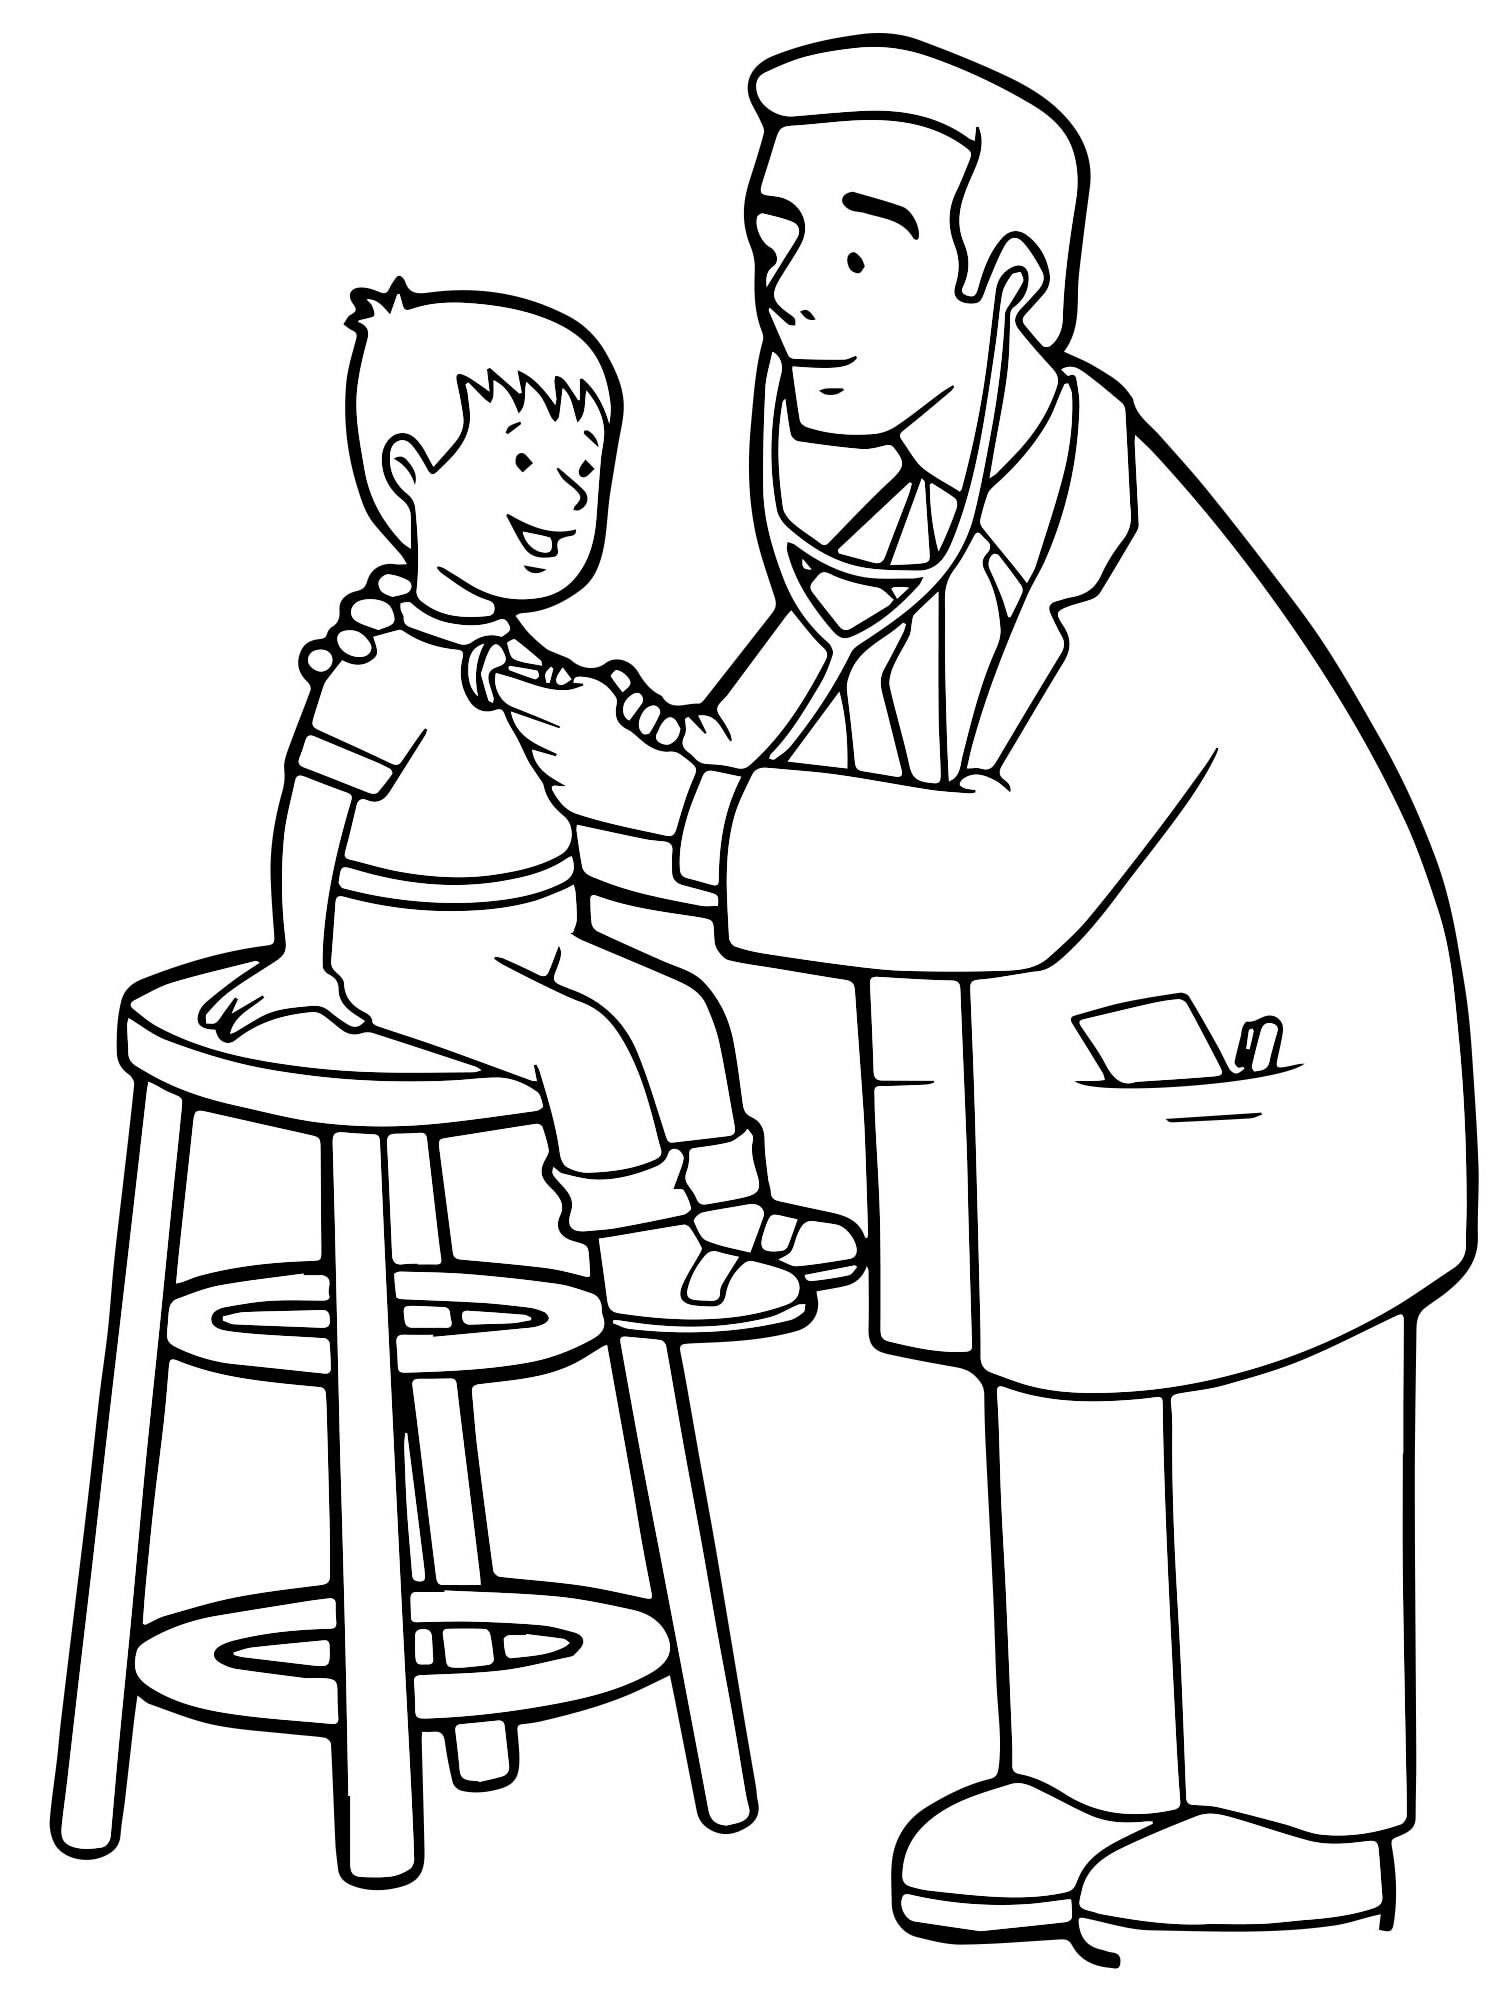 Раскраска детский врач | РАСКРАСКУ .РФ - распечатать и скачать